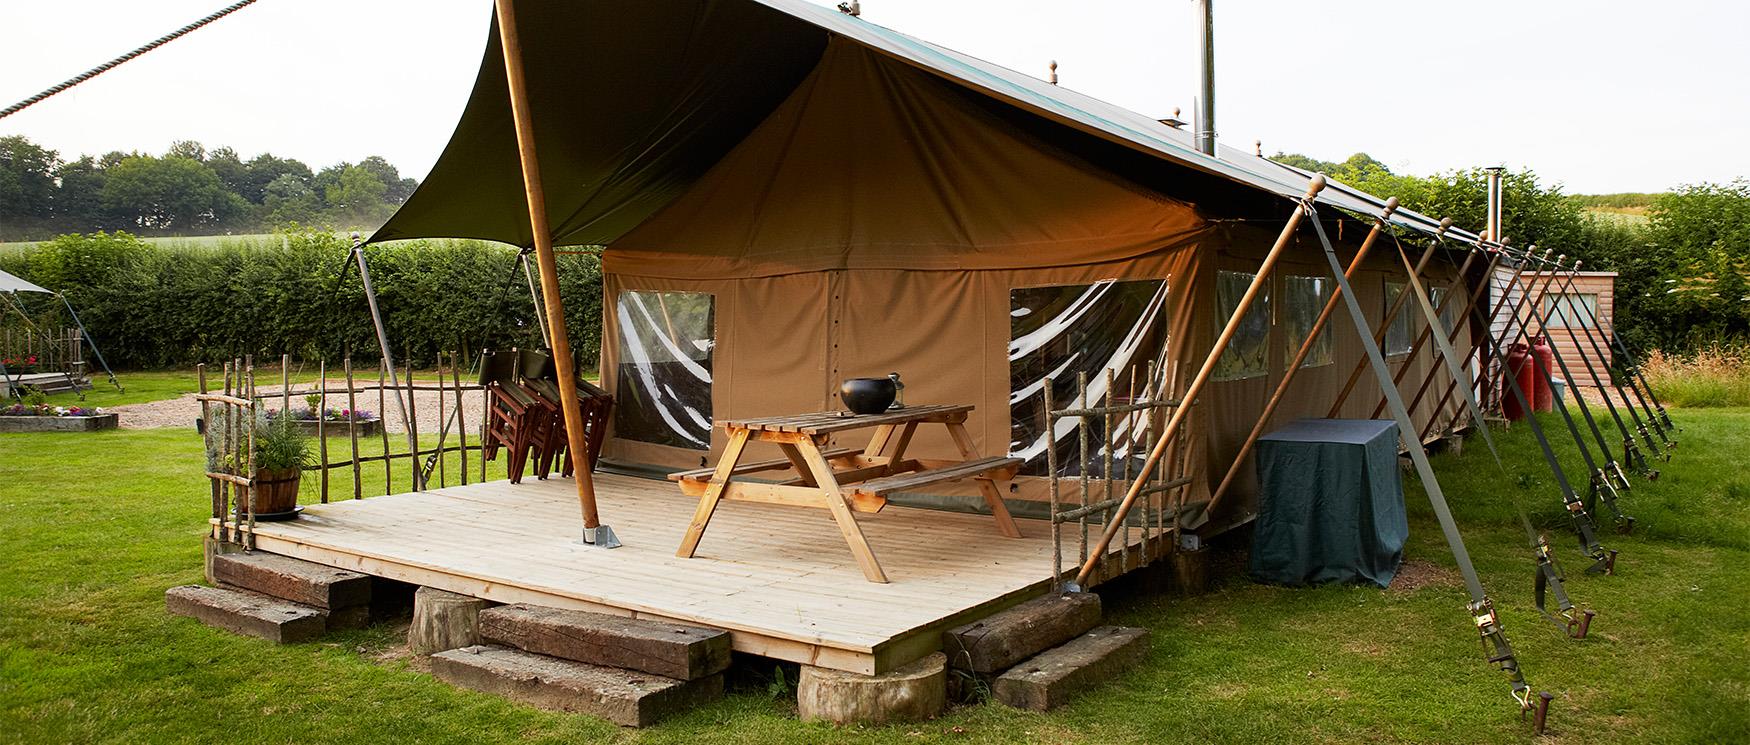 Safari Tent Glamping in Hampshire